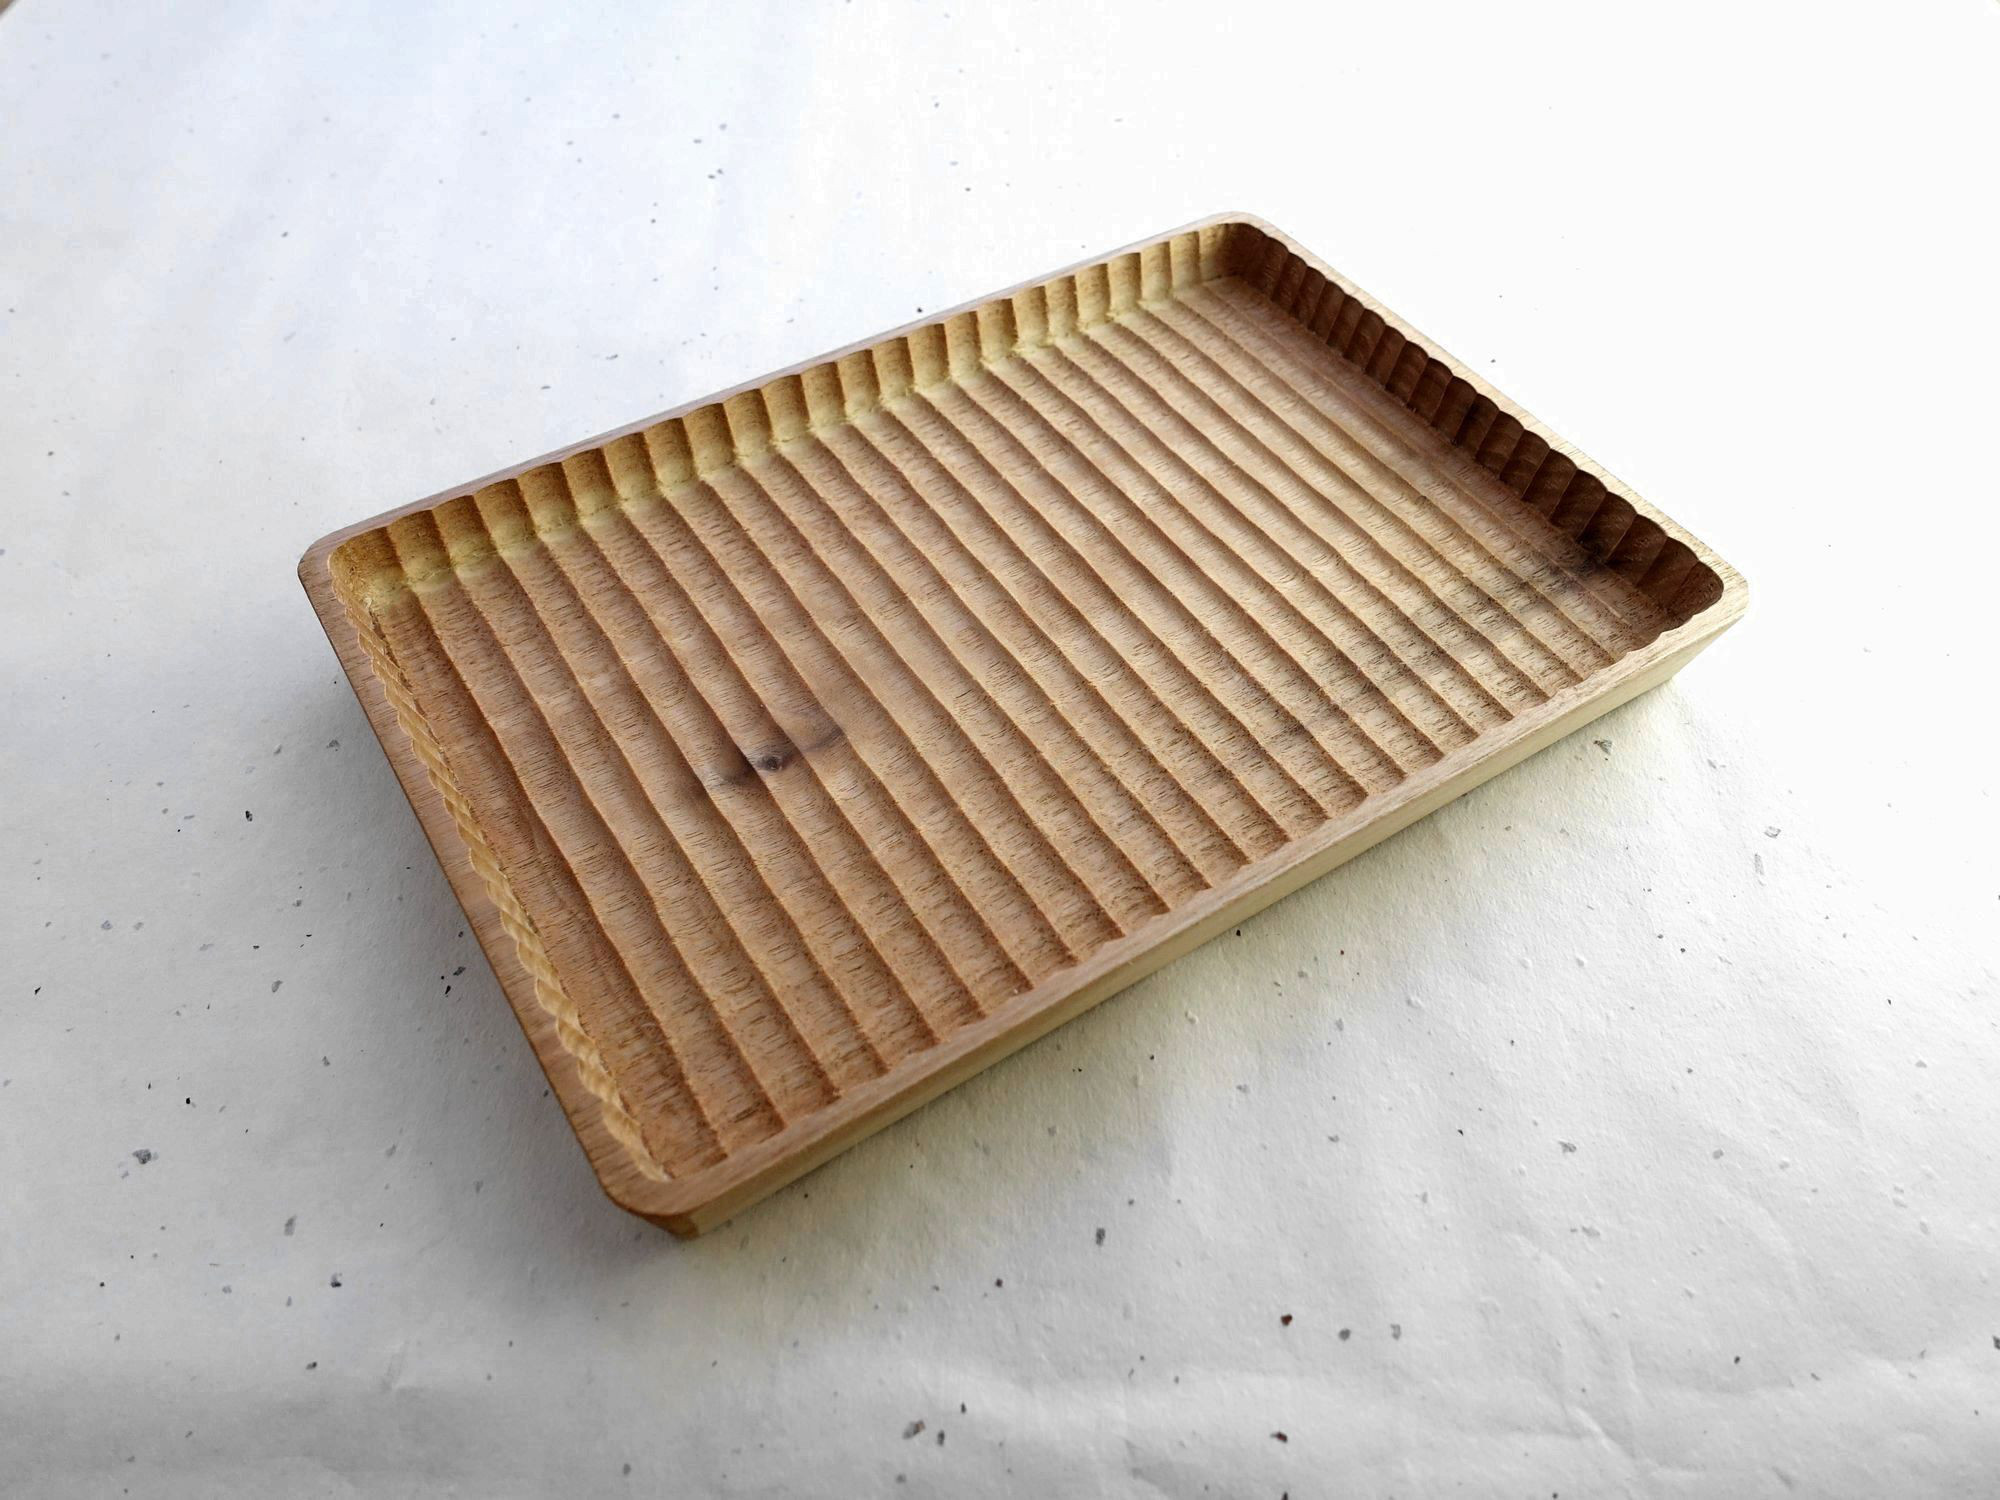 サイズ273×269×27cm我谷盆 お盆 木製トレー トレイ 漆器 木工 作家 中国茶 茶道 菓子盆 華道